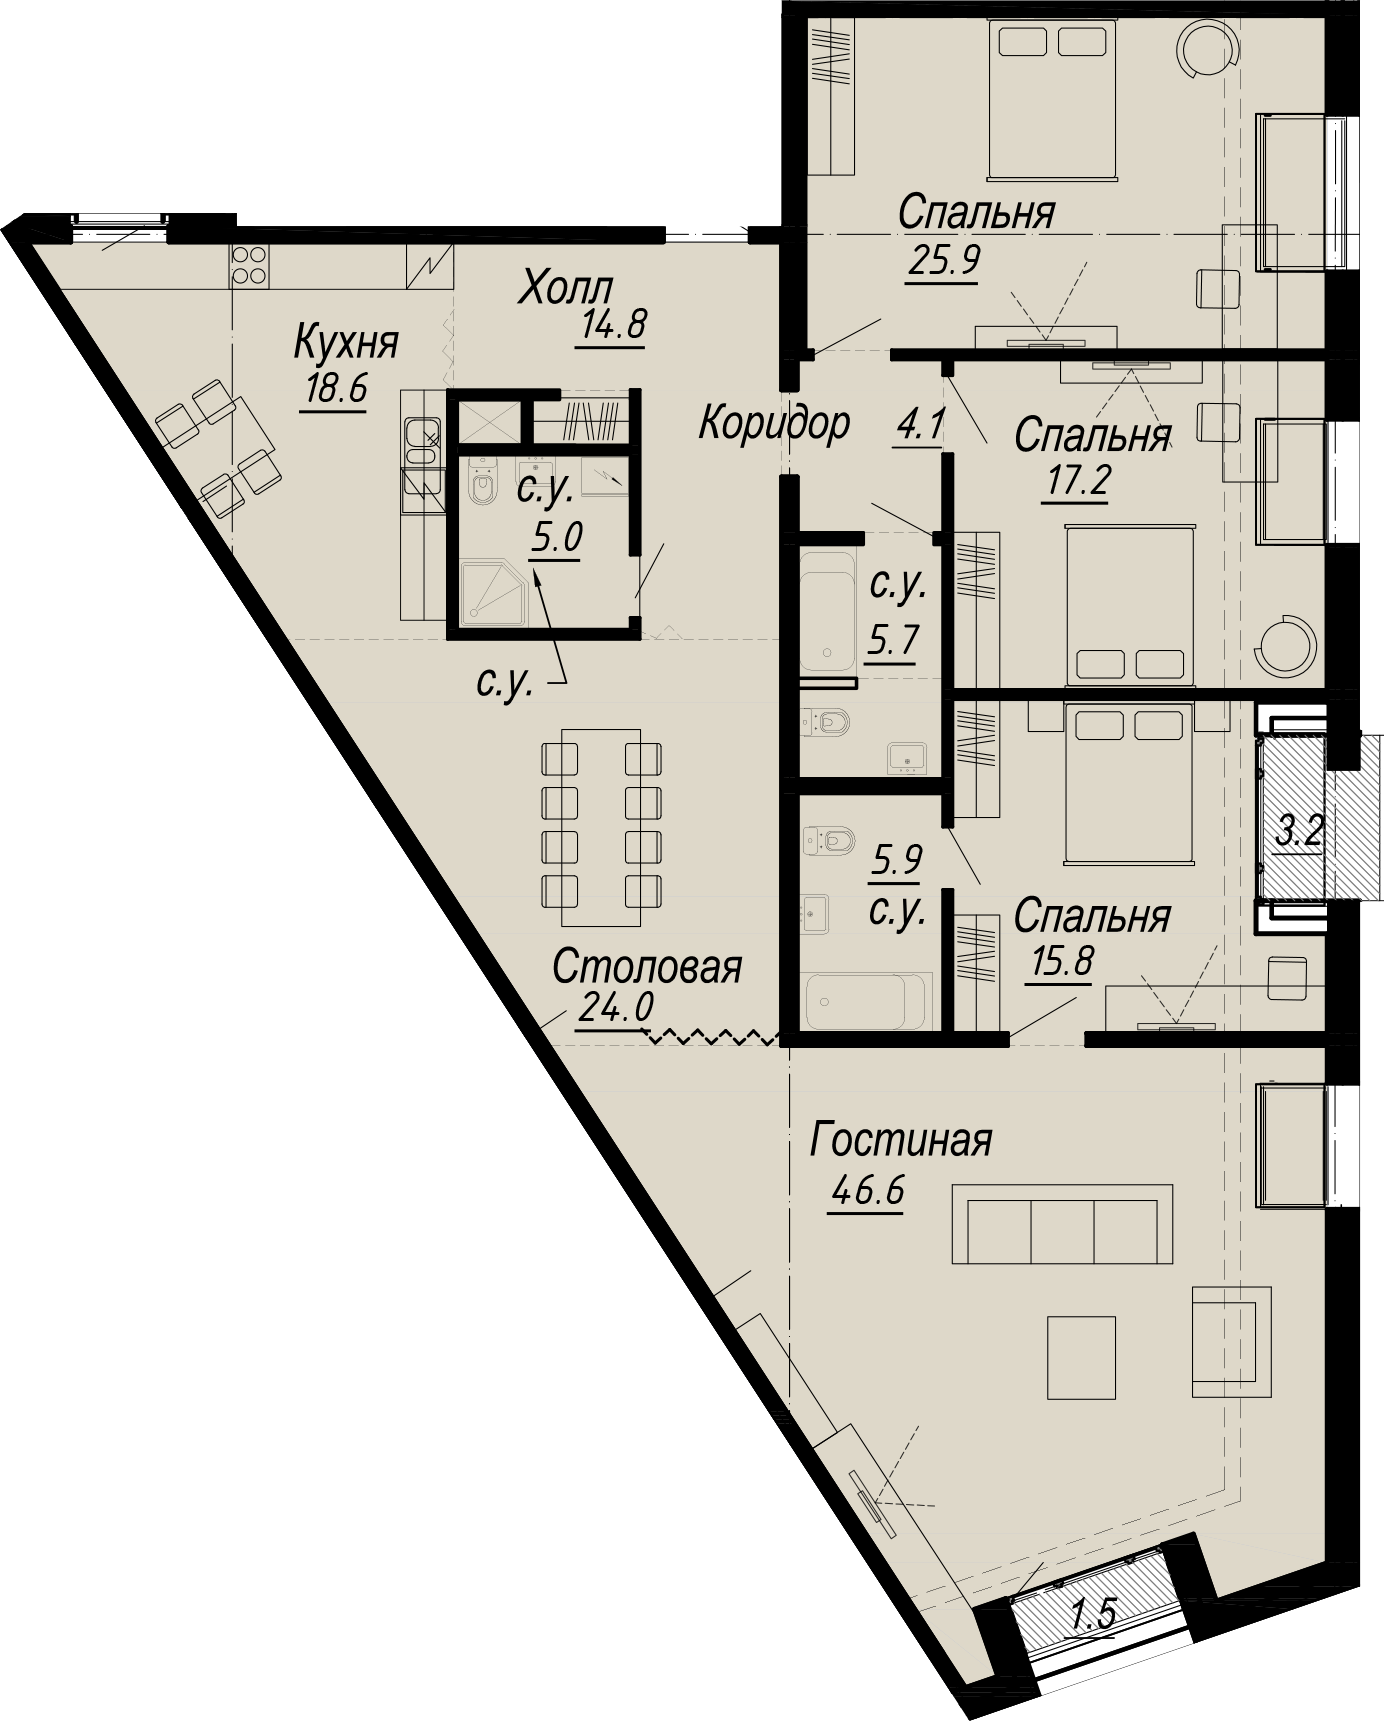 4-комнатная квартира  №8-7 в Meltzer Hall: 188.38 м², этаж 7 - купить в Санкт-Петербурге